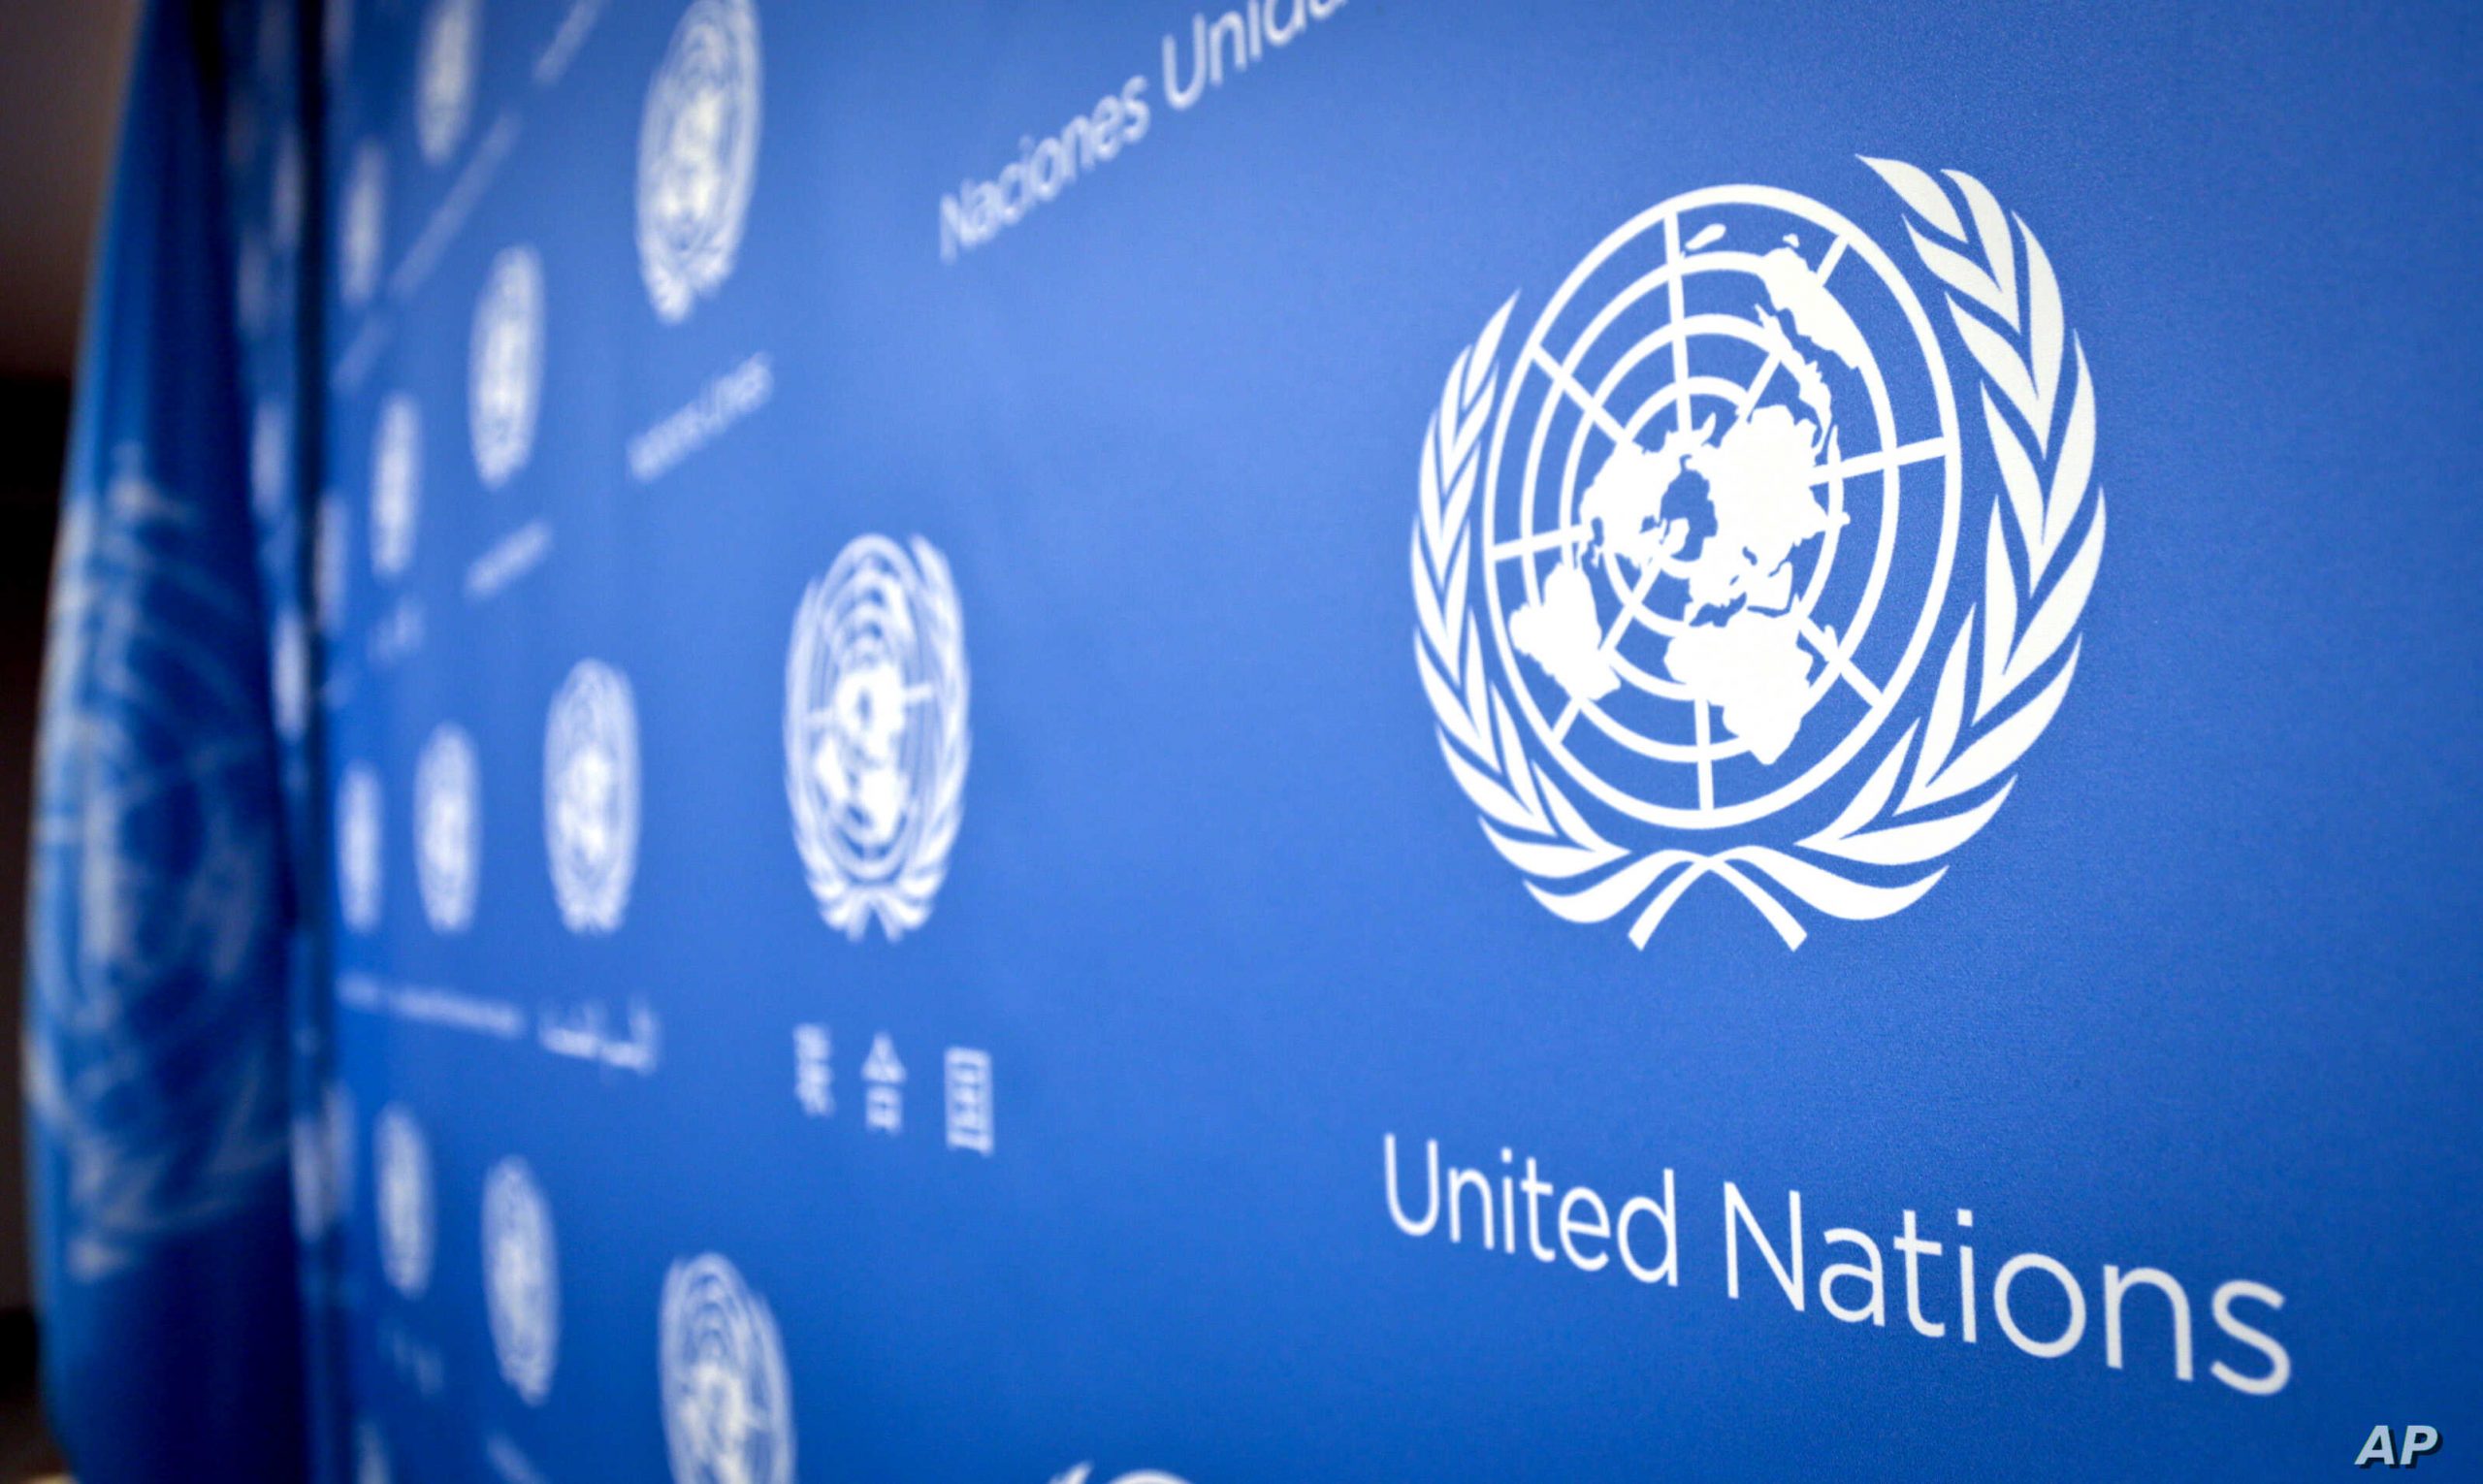 Este lunes inicia período de sesiones virtuales en la ONU | Diario 2001